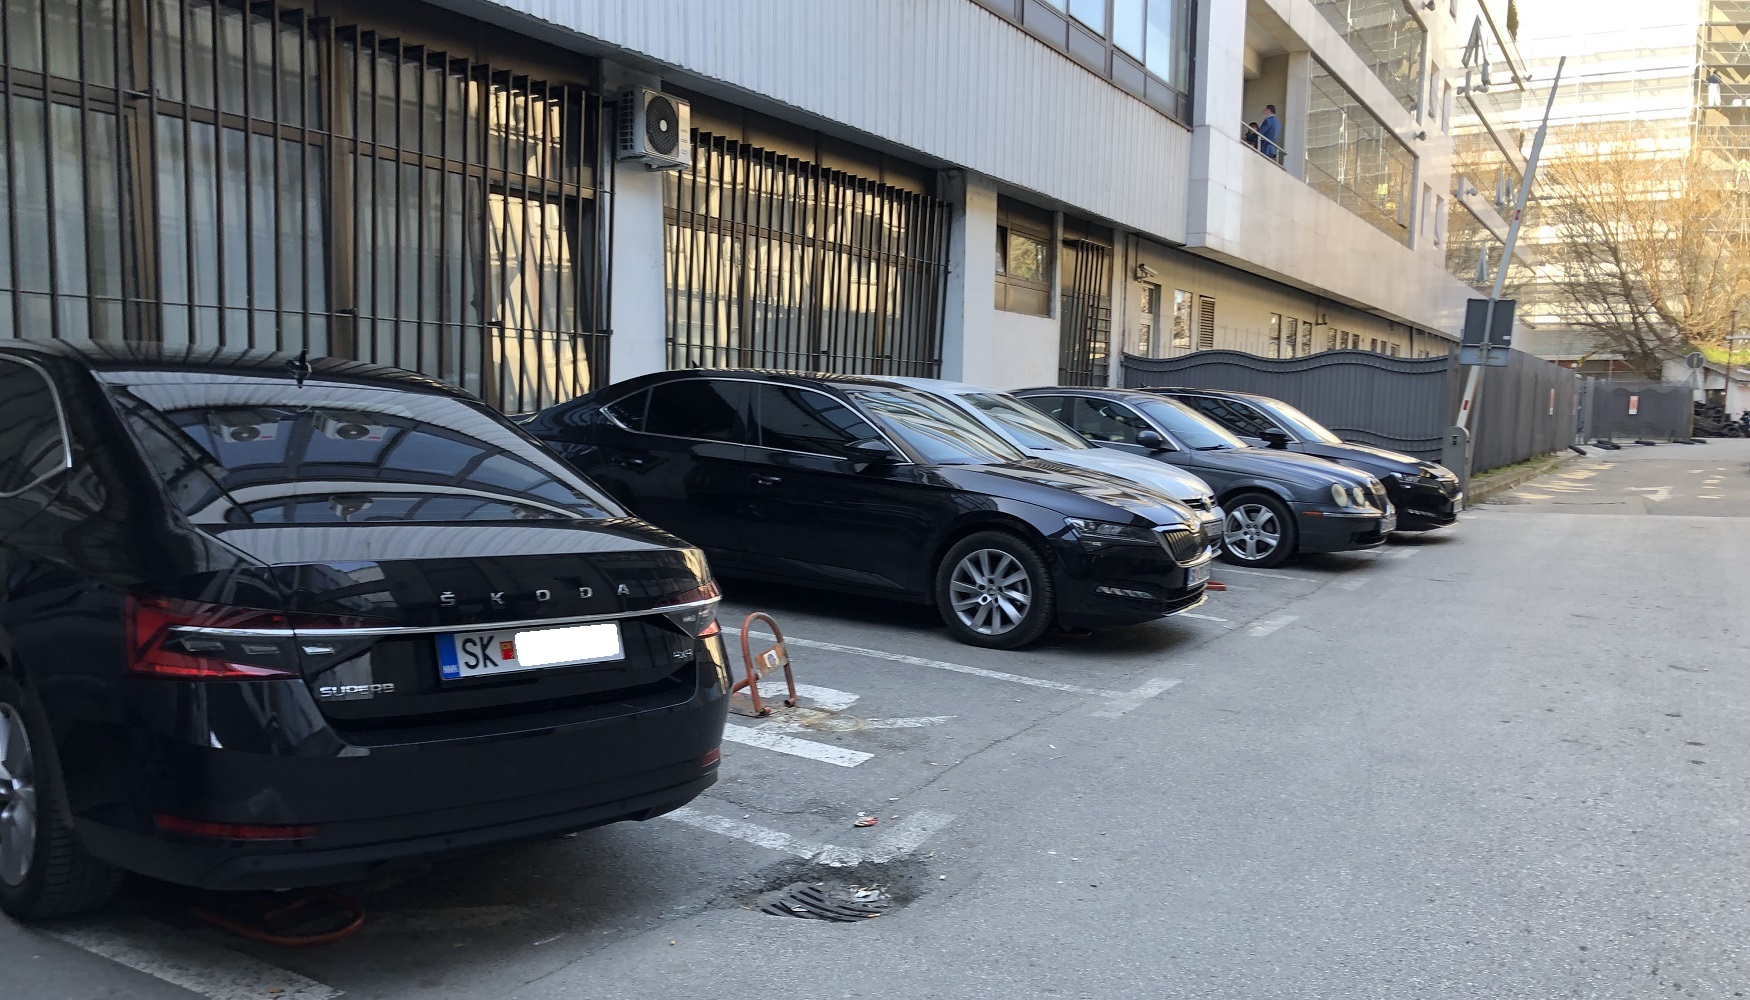 Владини возила паркирани зад зградата на поранешна „Нова Македонија“, каде што сега се наоѓаат повеќе министерства